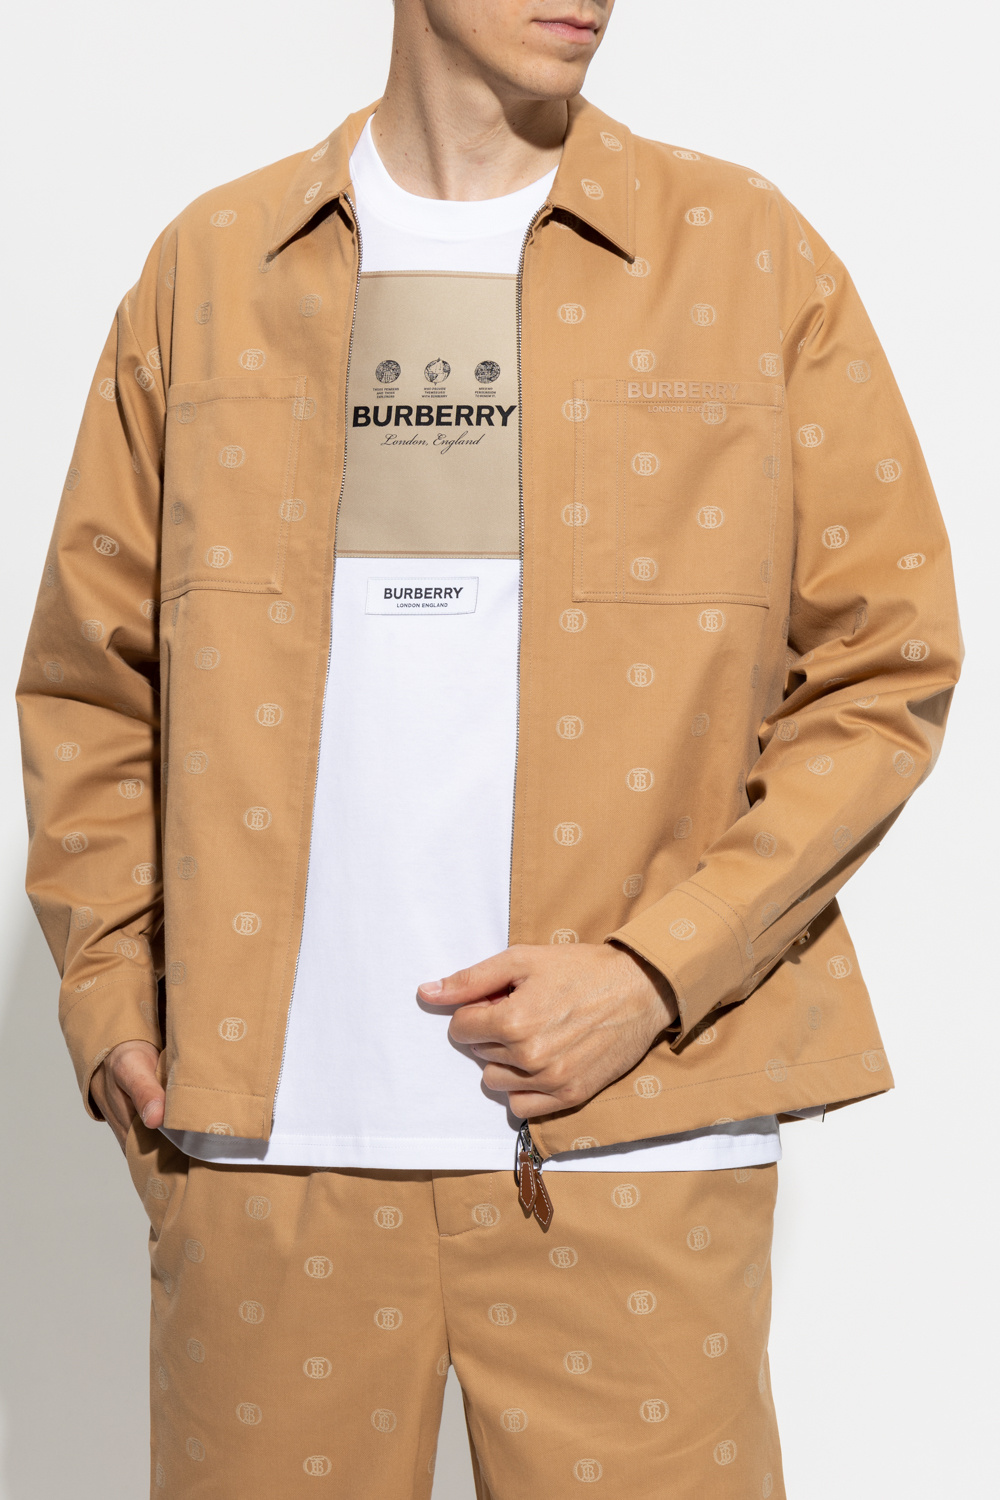 Burberry ‘Honley’ jacket